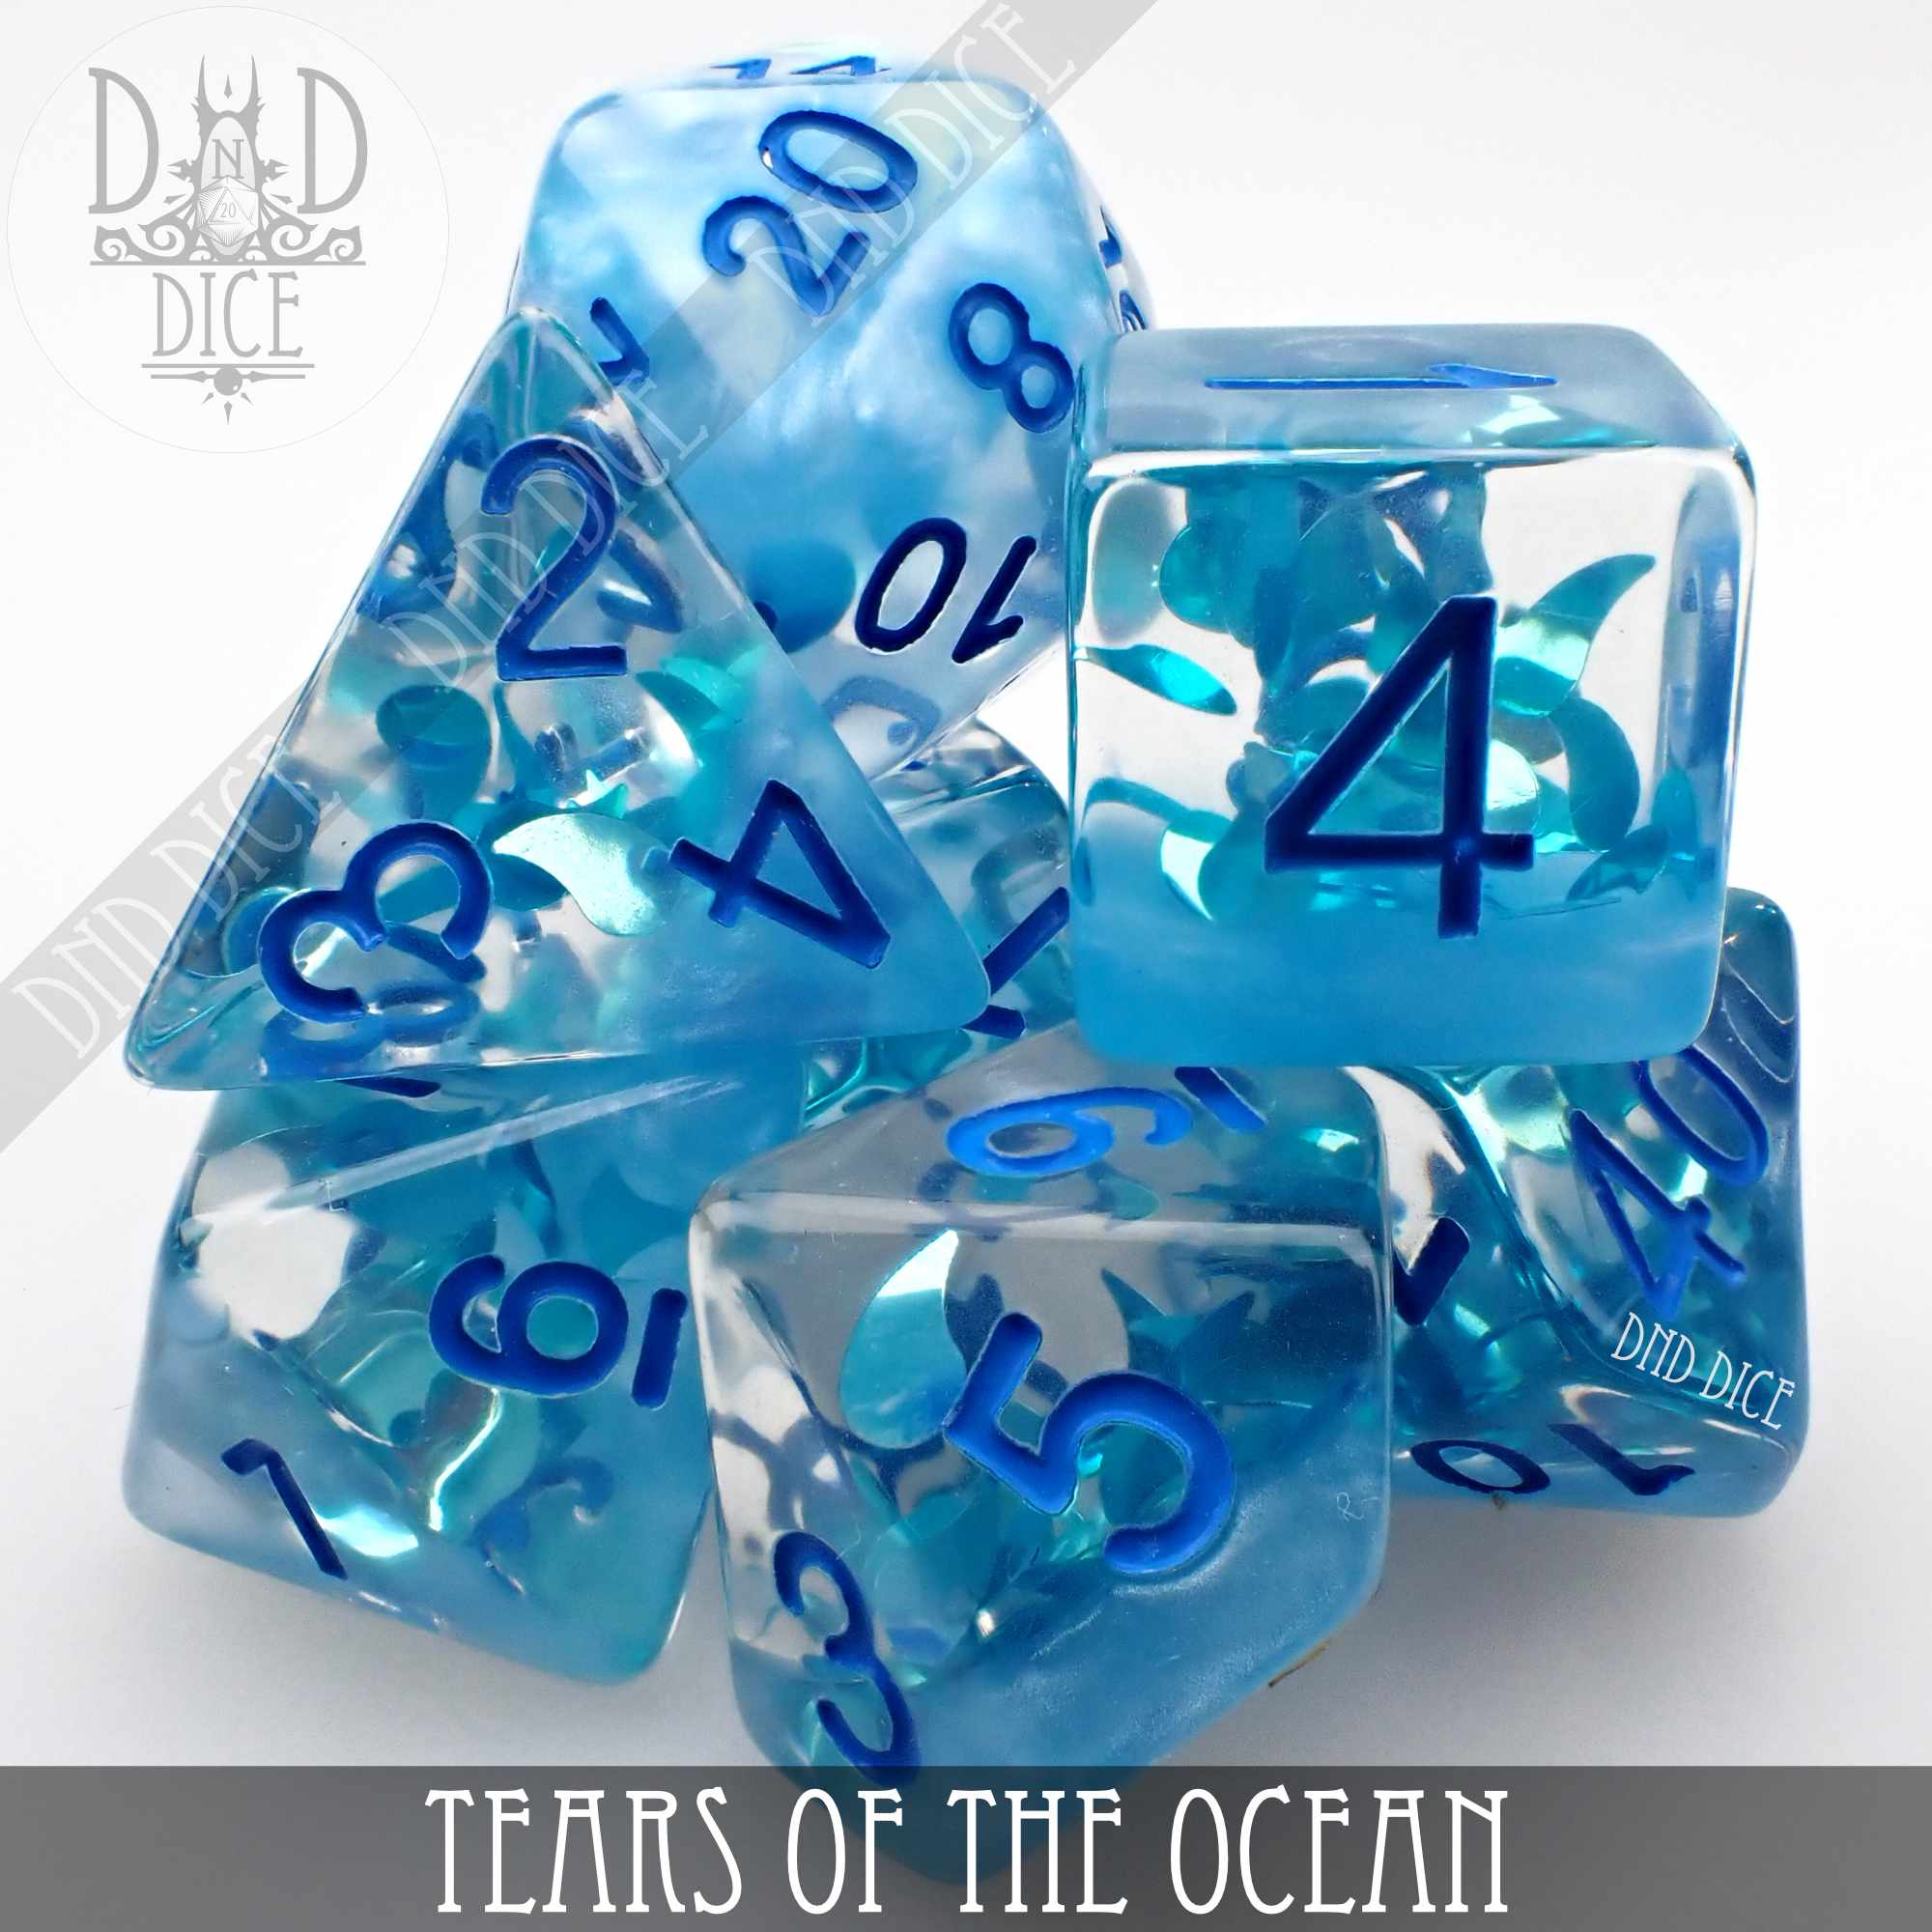 Tears of the Ocean Dice Set